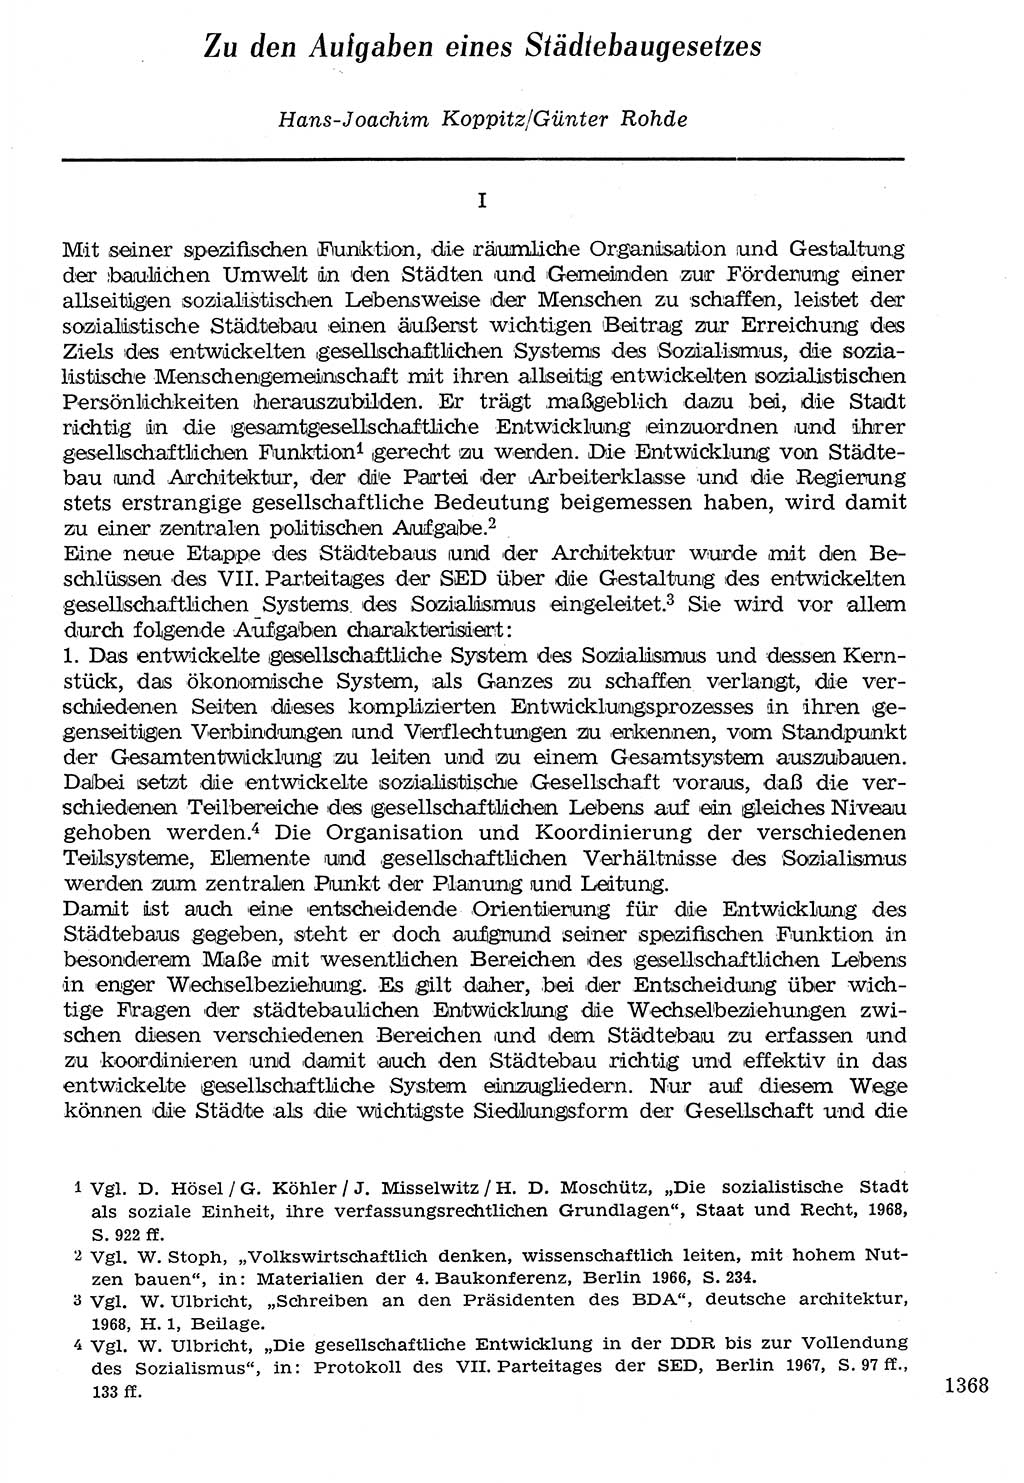 Staat und Recht (StuR), 17. Jahrgang [Deutsche Demokratische Republik (DDR)] 1968, Seite 1368 (StuR DDR 1968, S. 1368)